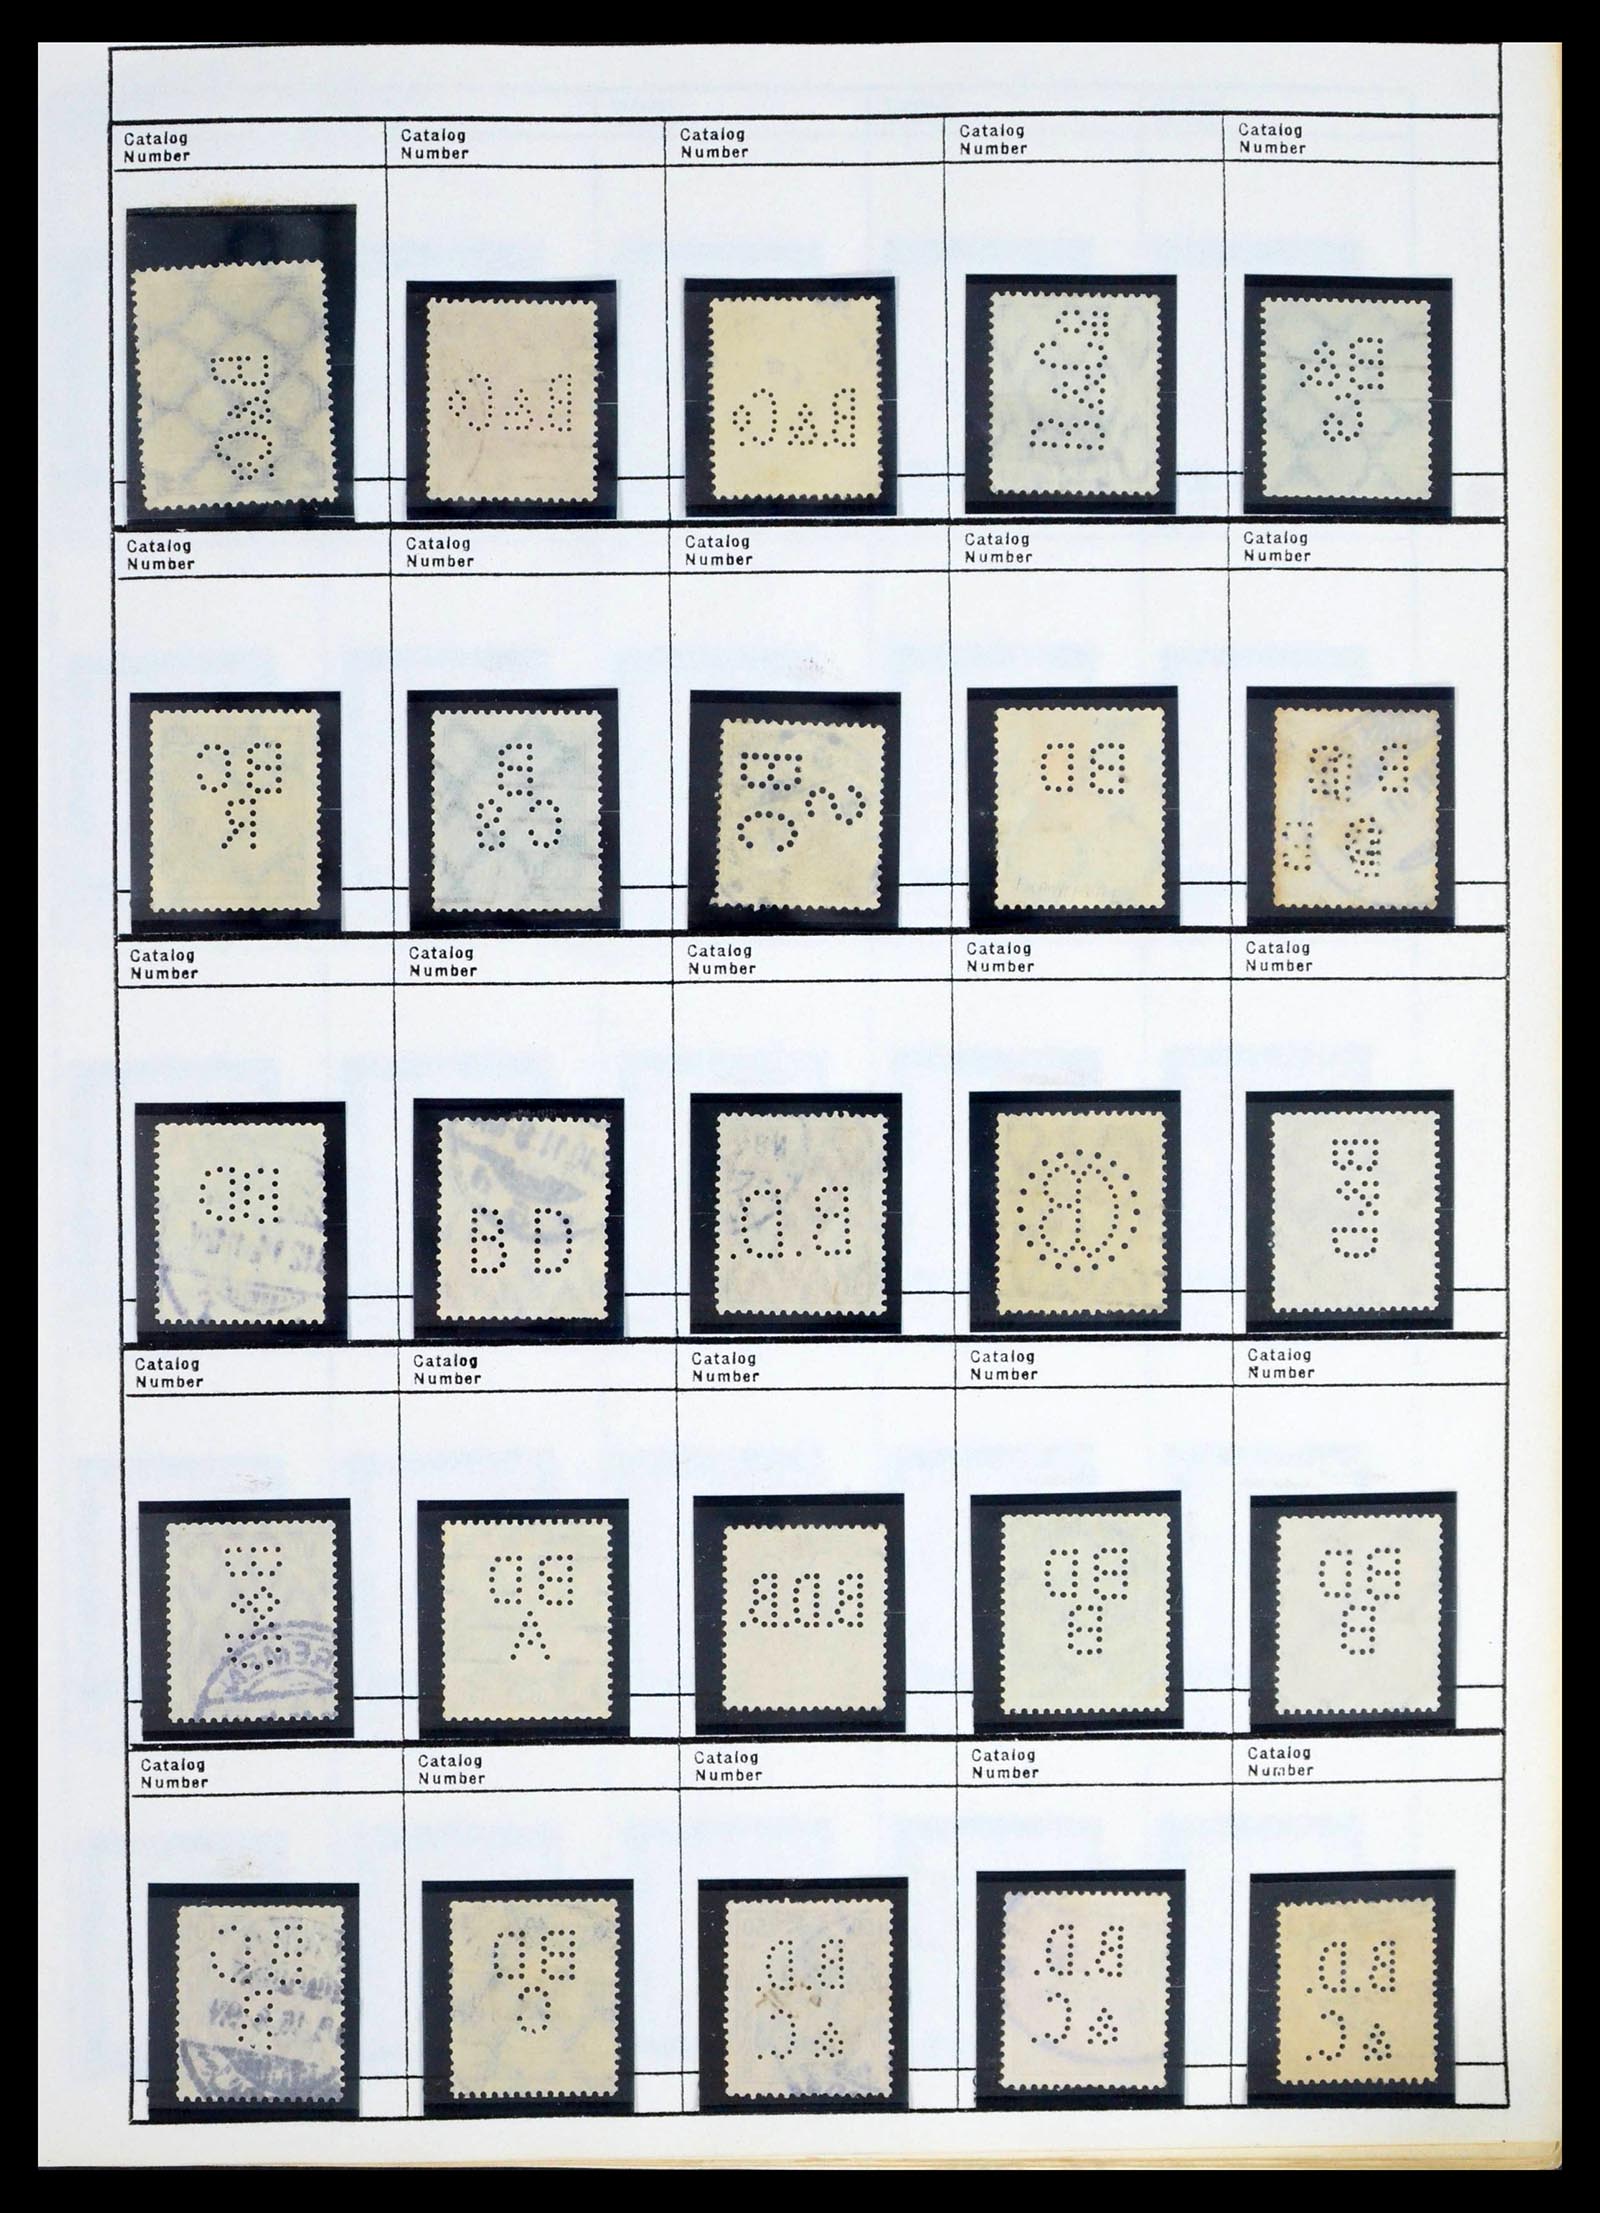 39480 0059 - Stamp collection 39480 German Reich perfins 1880-1955.